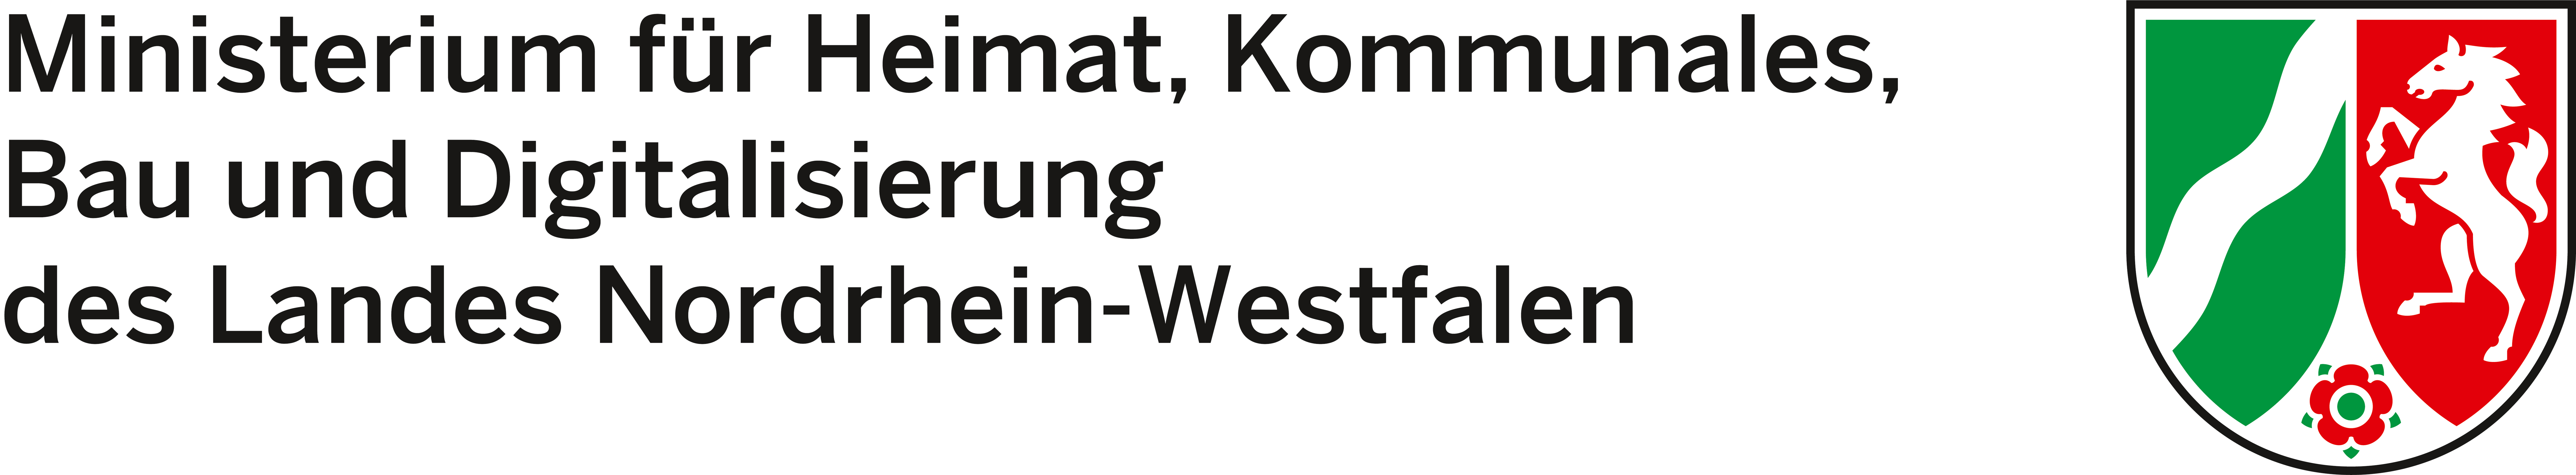 Logo: Ministerium für Heimat, Kommunales, Bau und Digitalisierung des Landes Nordrhein-Westfalen